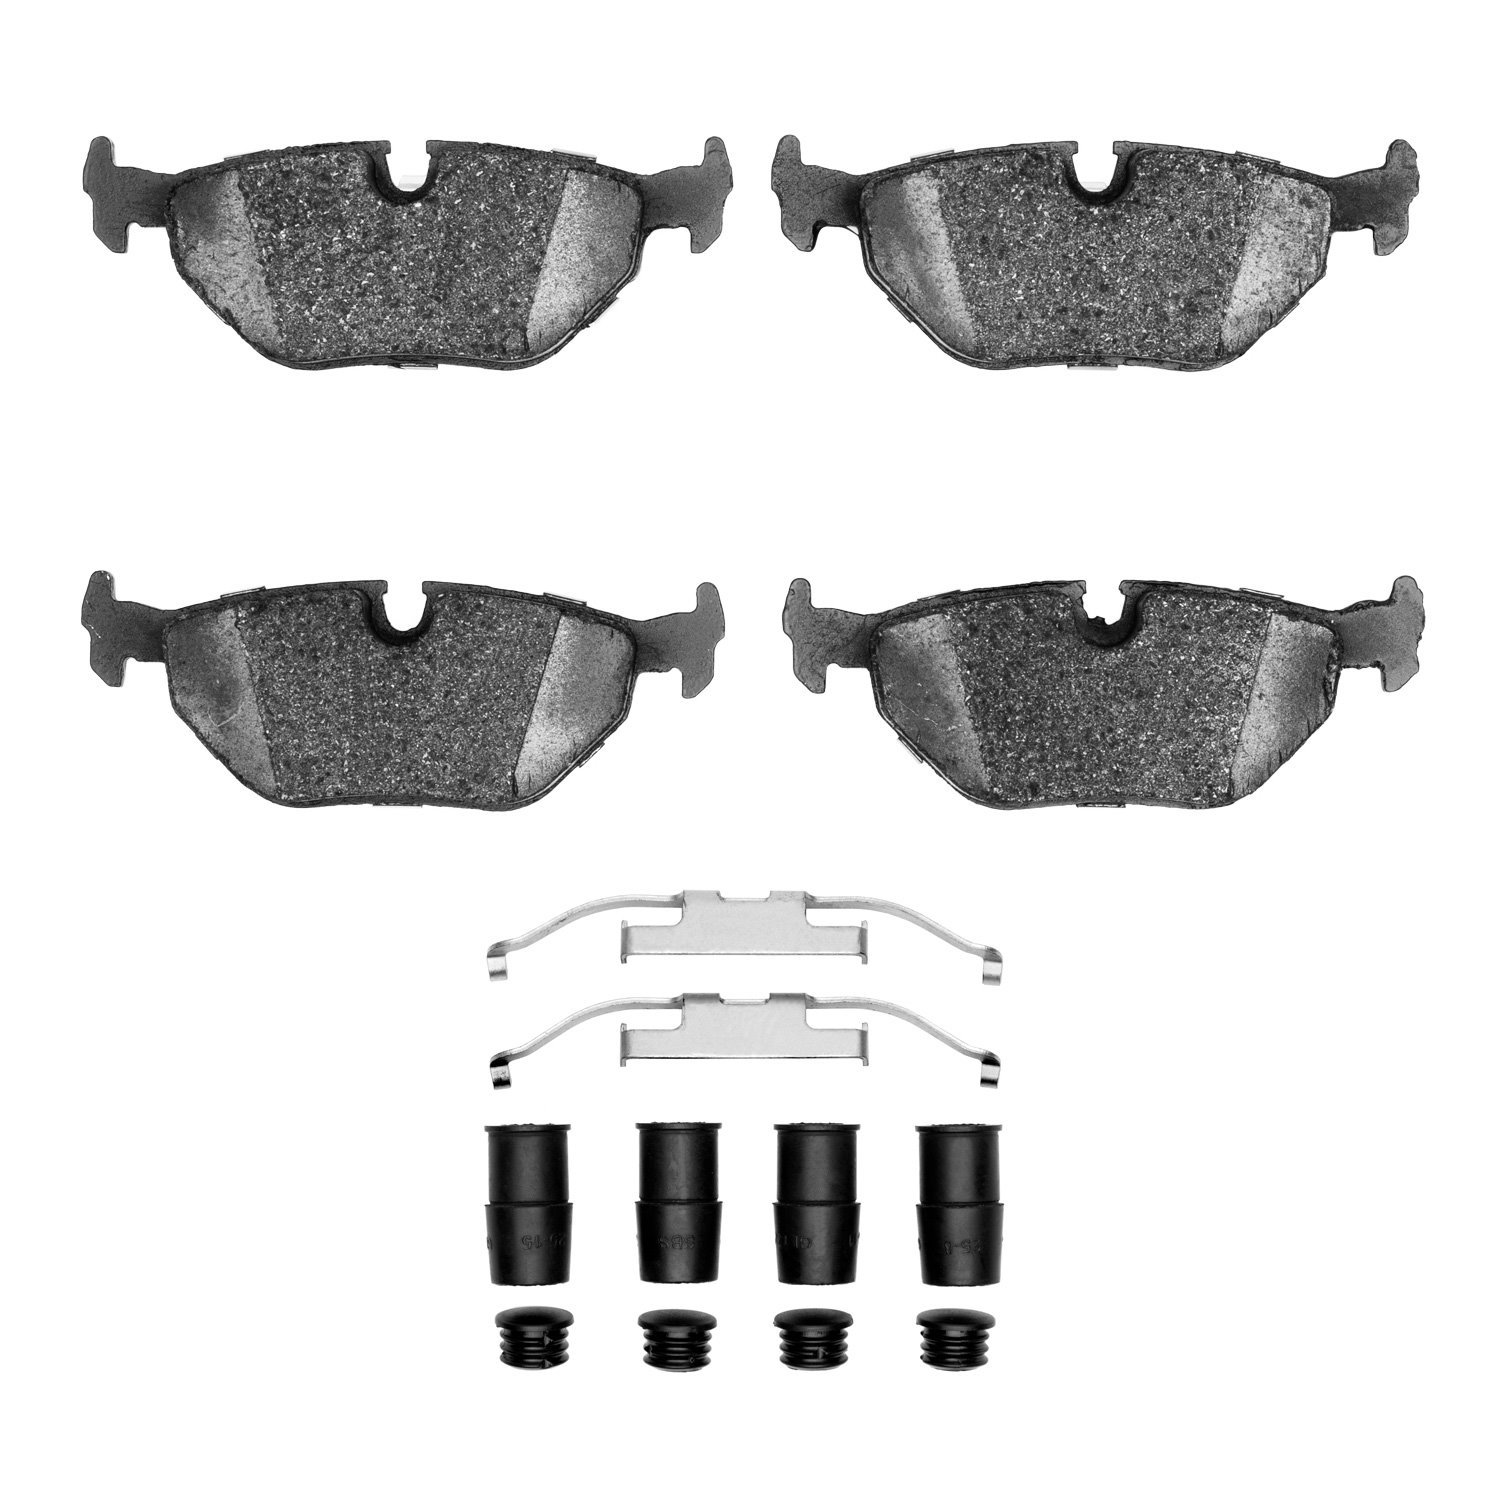 1600-0396-01 5000 Euro Ceramic Brake Pads & Hardware Kit, 1987-2002 BMW, Position: Rear